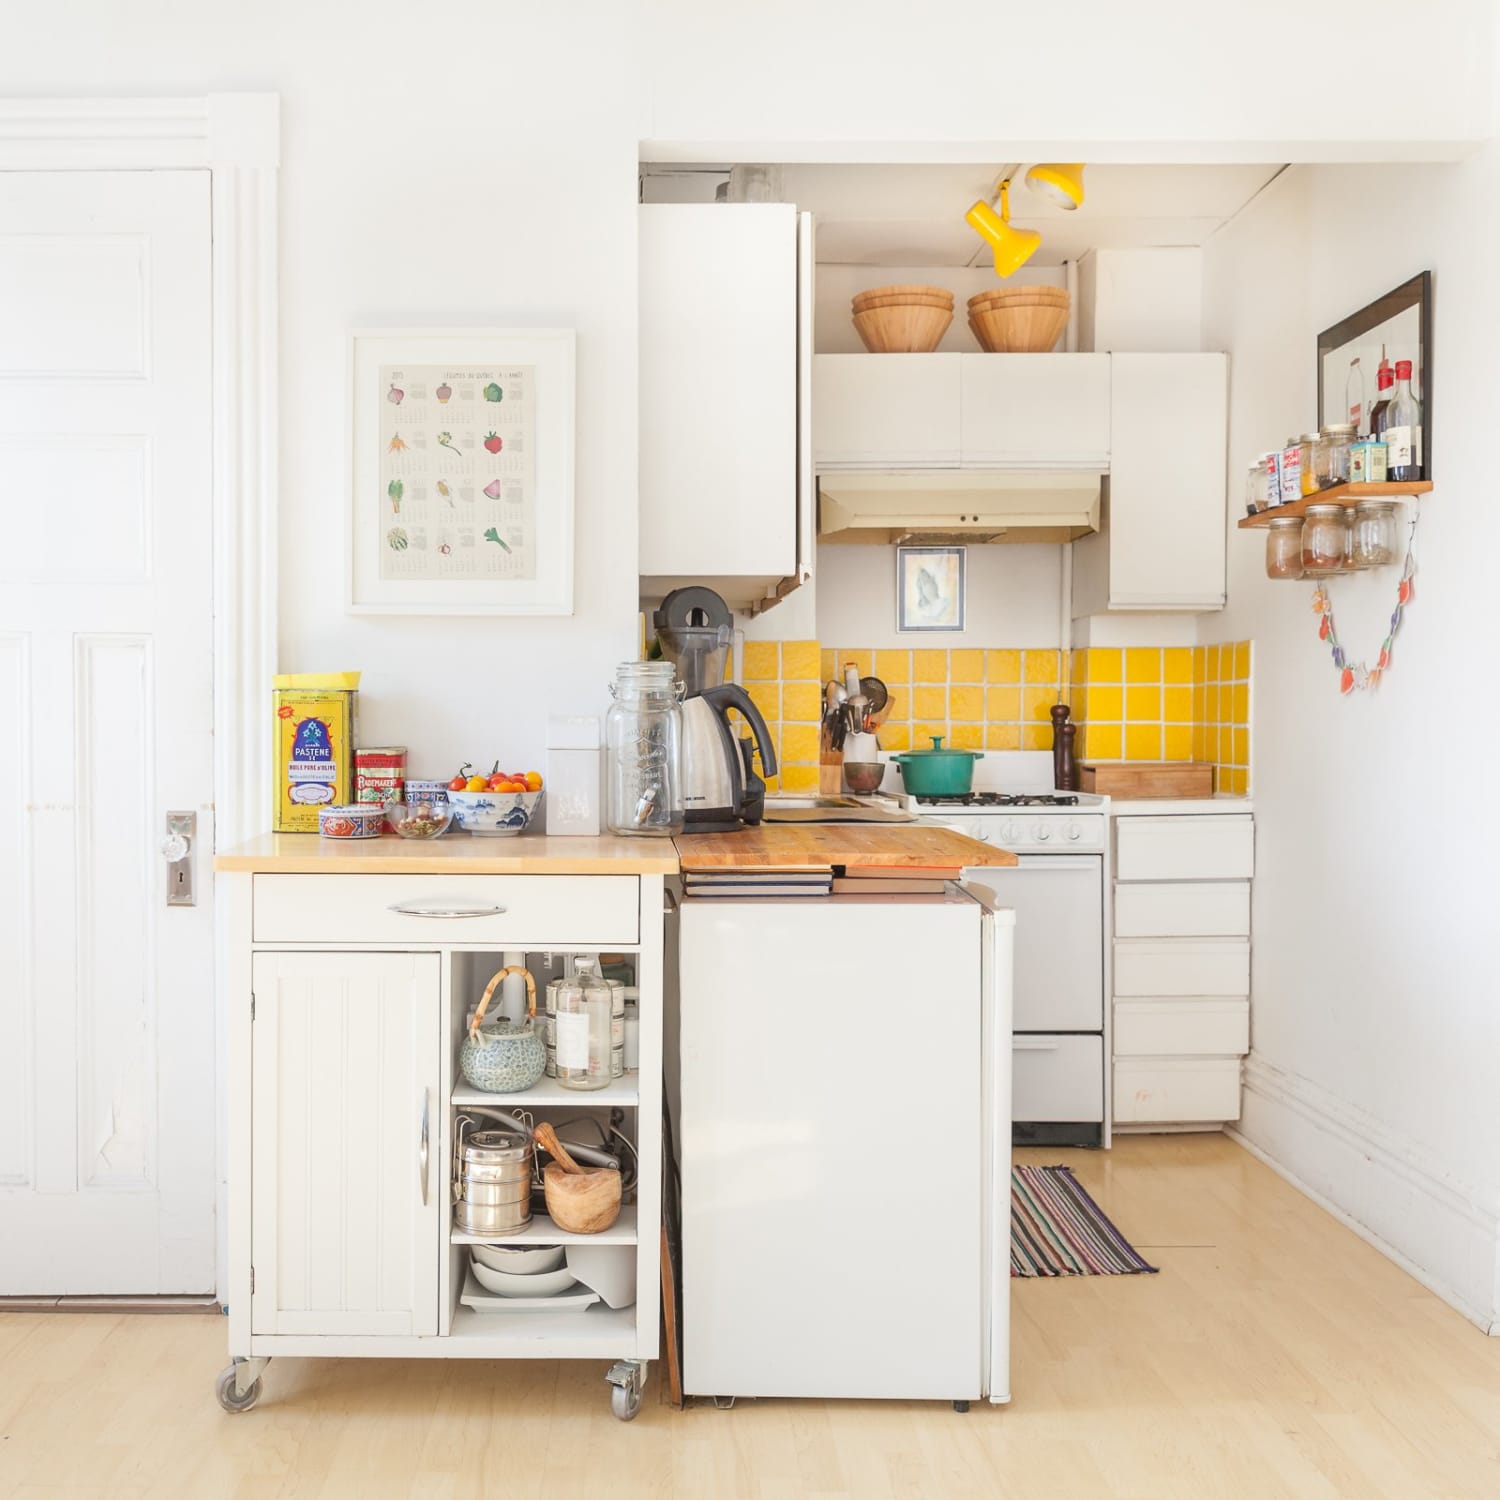 Compact Miniature Appliances : dorm room kitchen